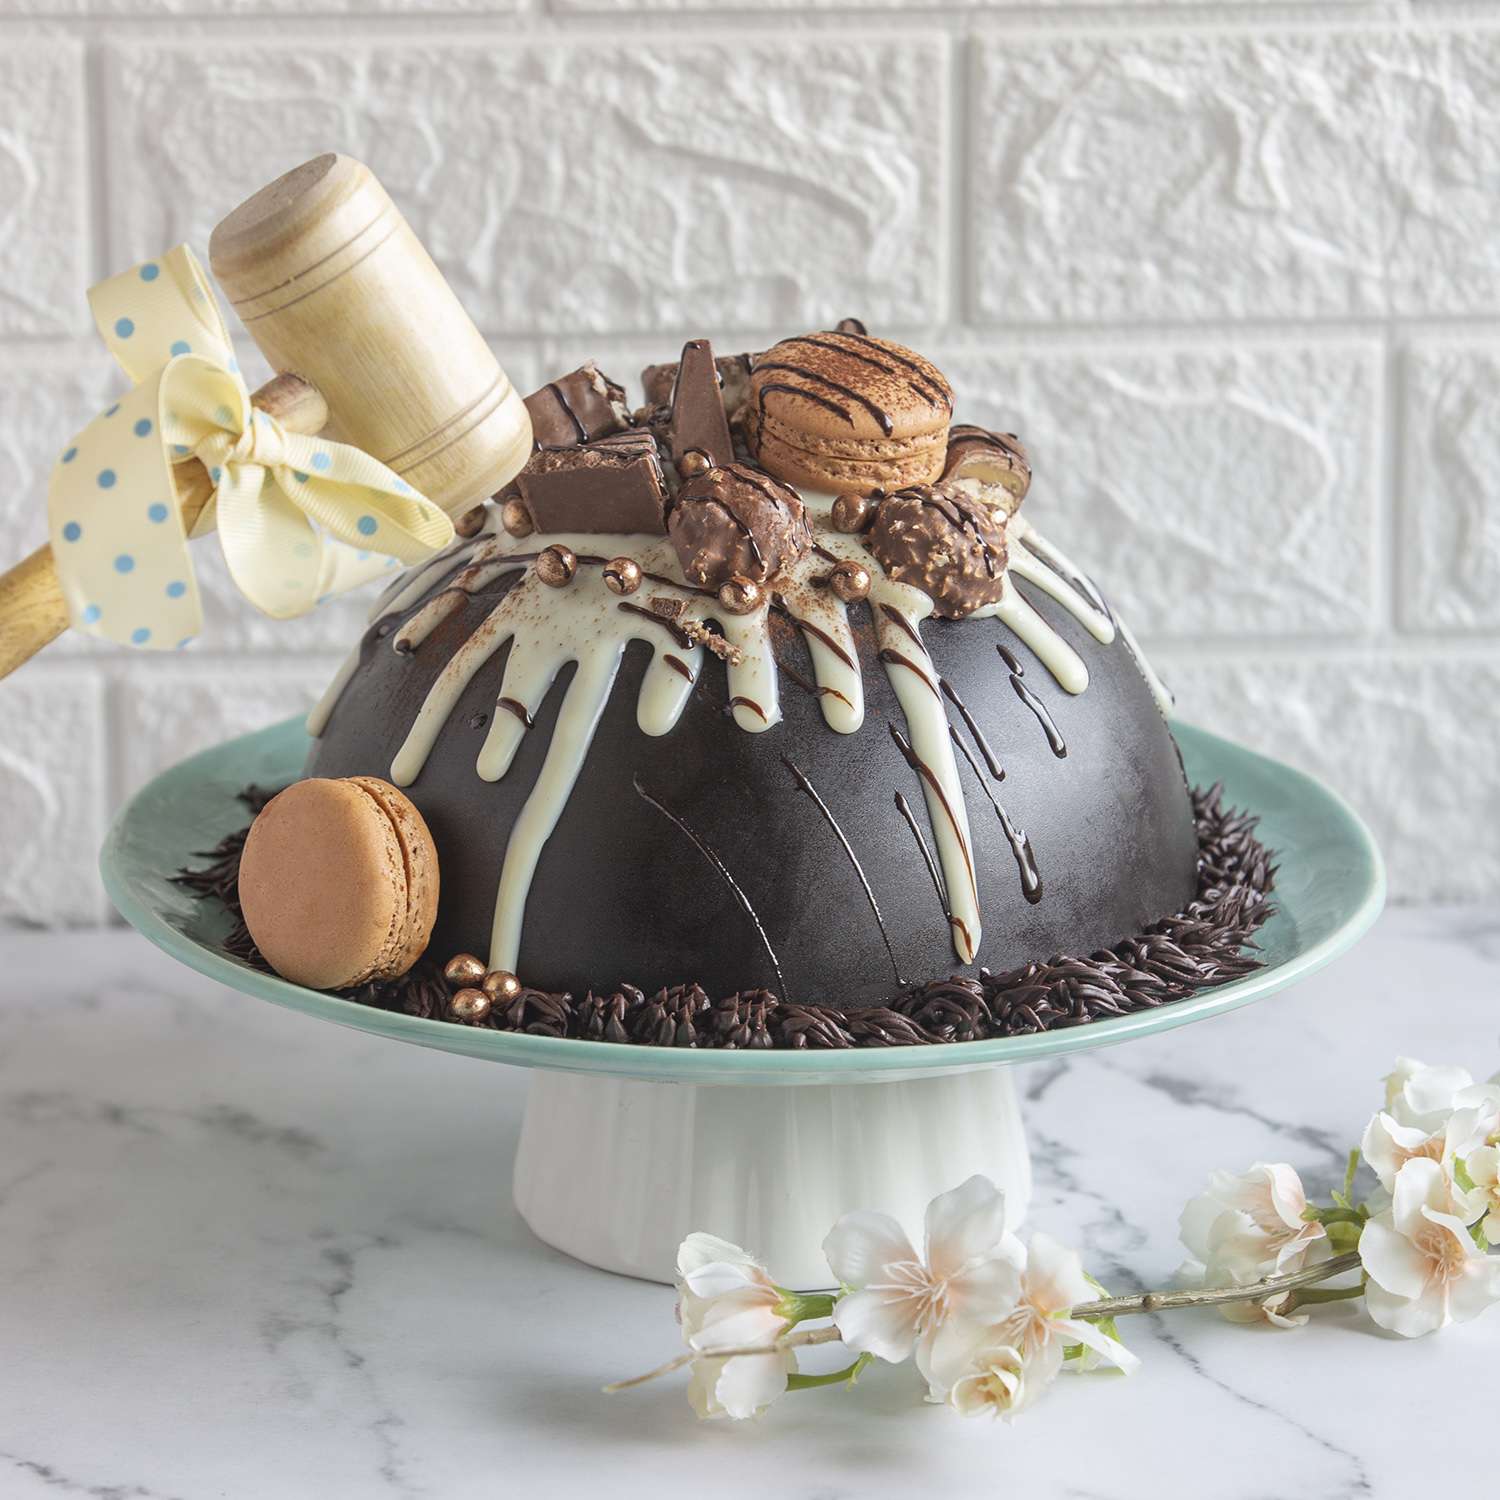 Vanilla & Chocolate Truffle Cake – Urban Craft Gourmet